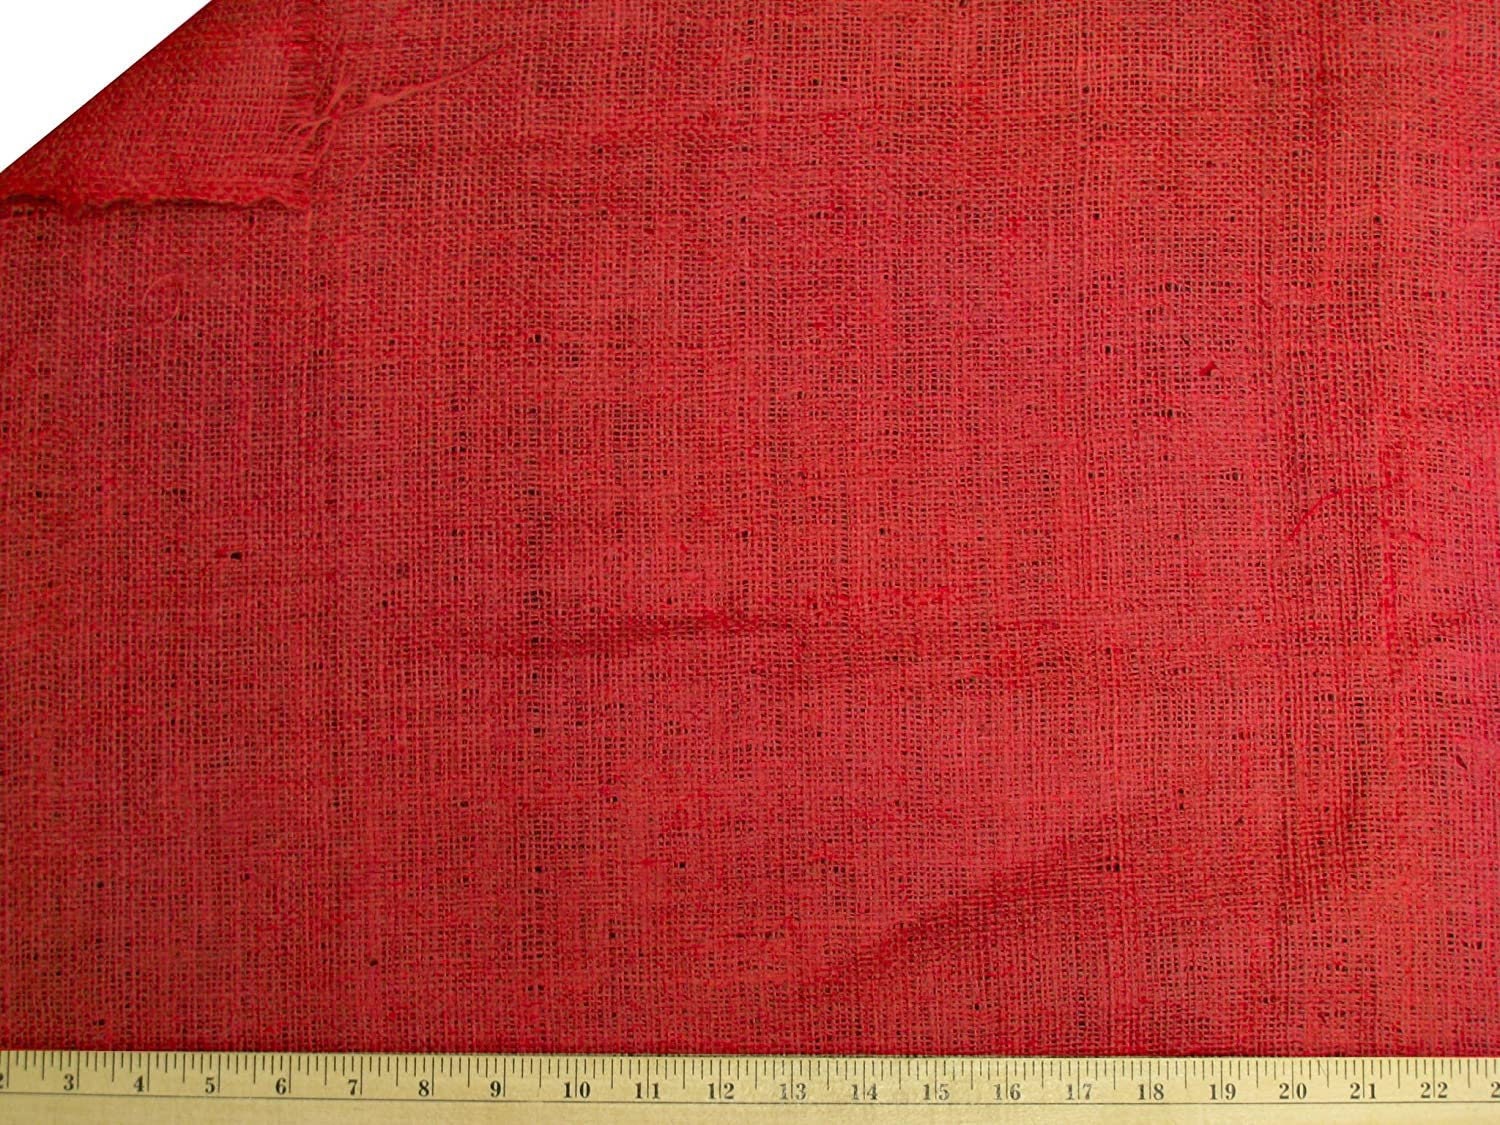 LA Linen Cotton Duck Canvas Cloth, 10oz. Natural  